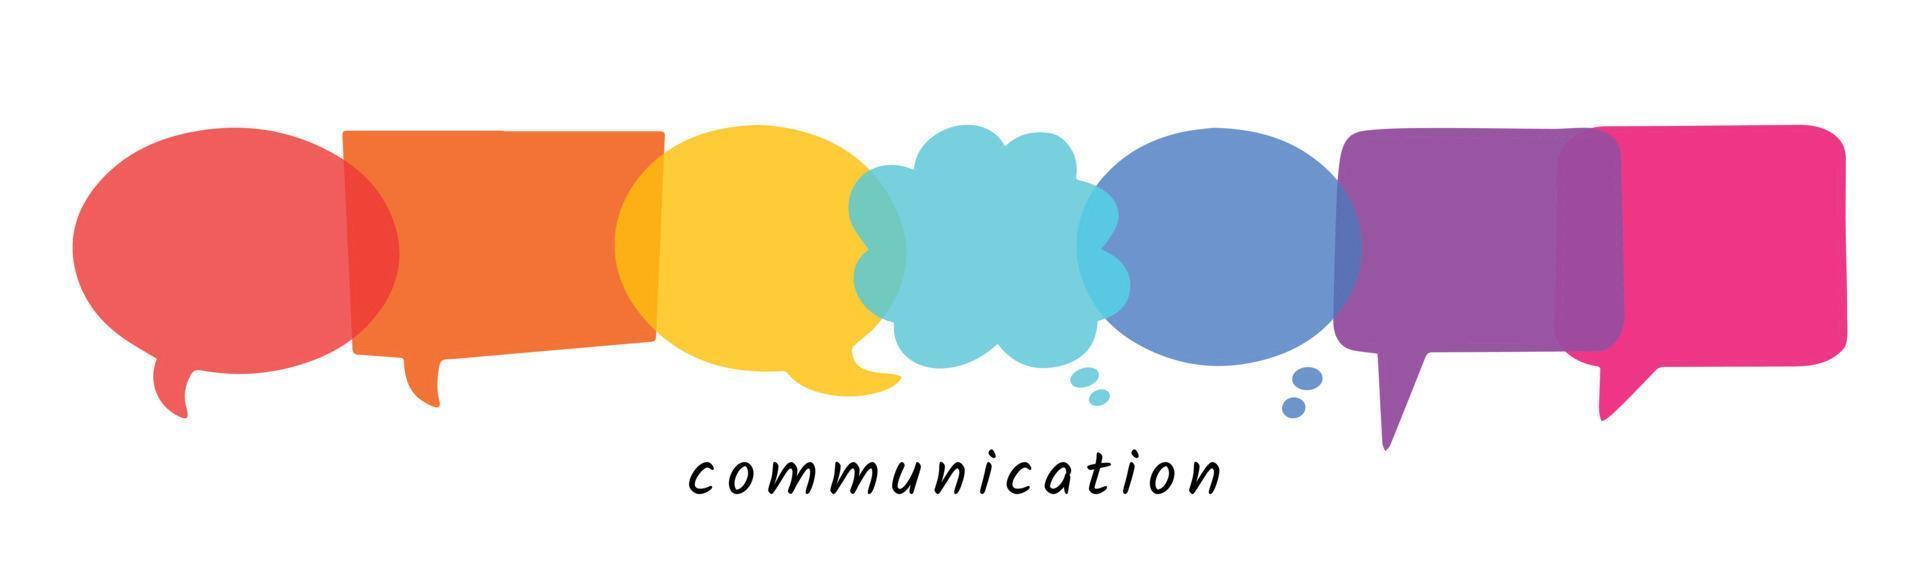 notion de communication. bulles de dialogue collection d'icônes dessinées à la main. ensemble de vecteurs isolés de boîtes de dialogue transparentes colorées arc-en-ciel simples vecteur